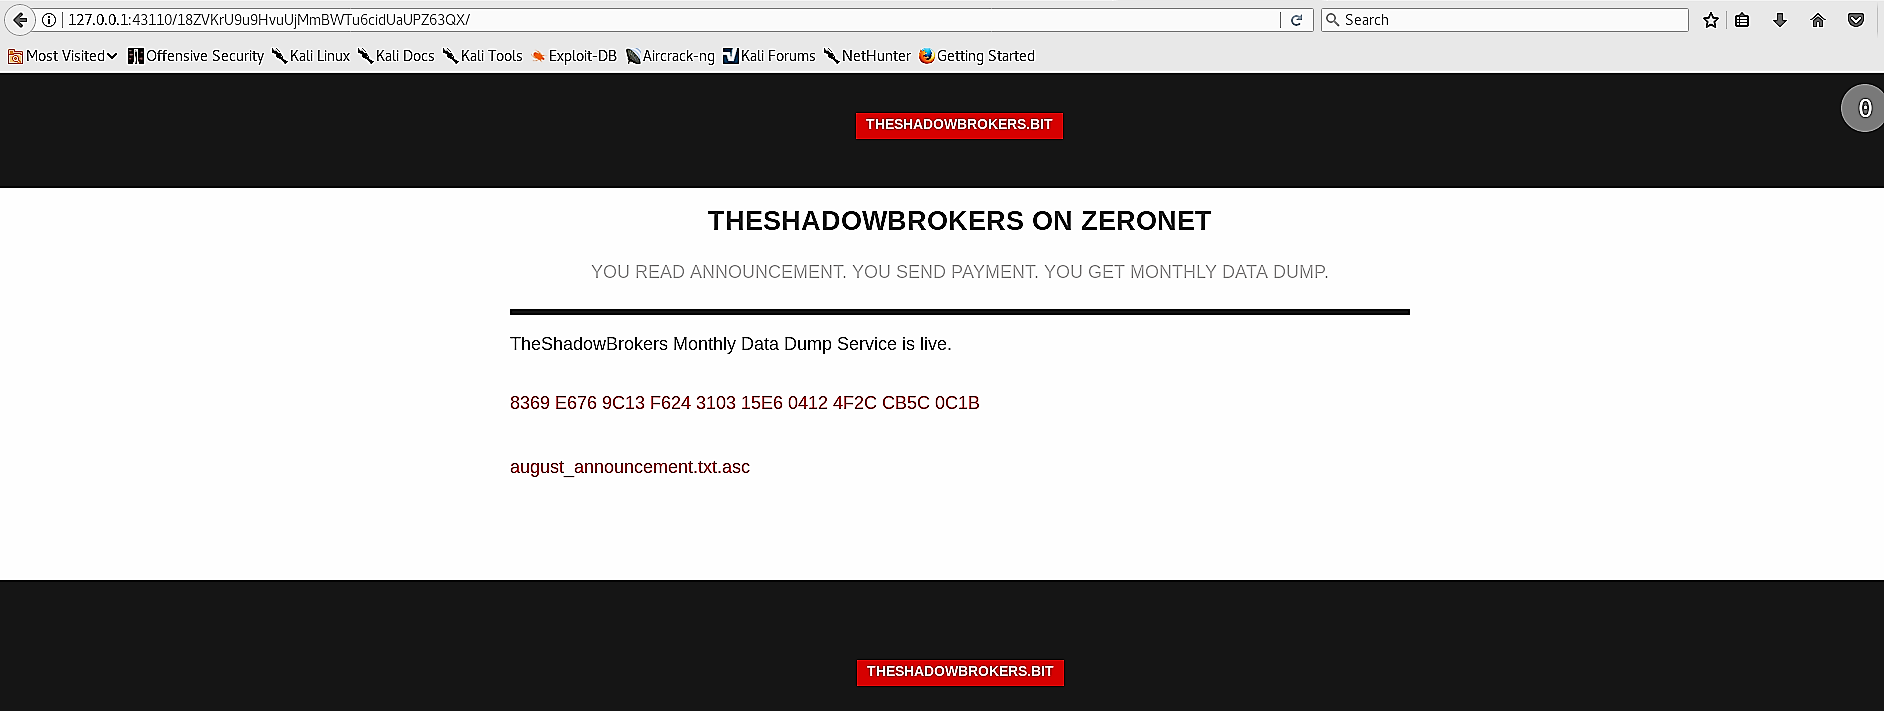 The Shadow Brokers ZeroNet website analysis